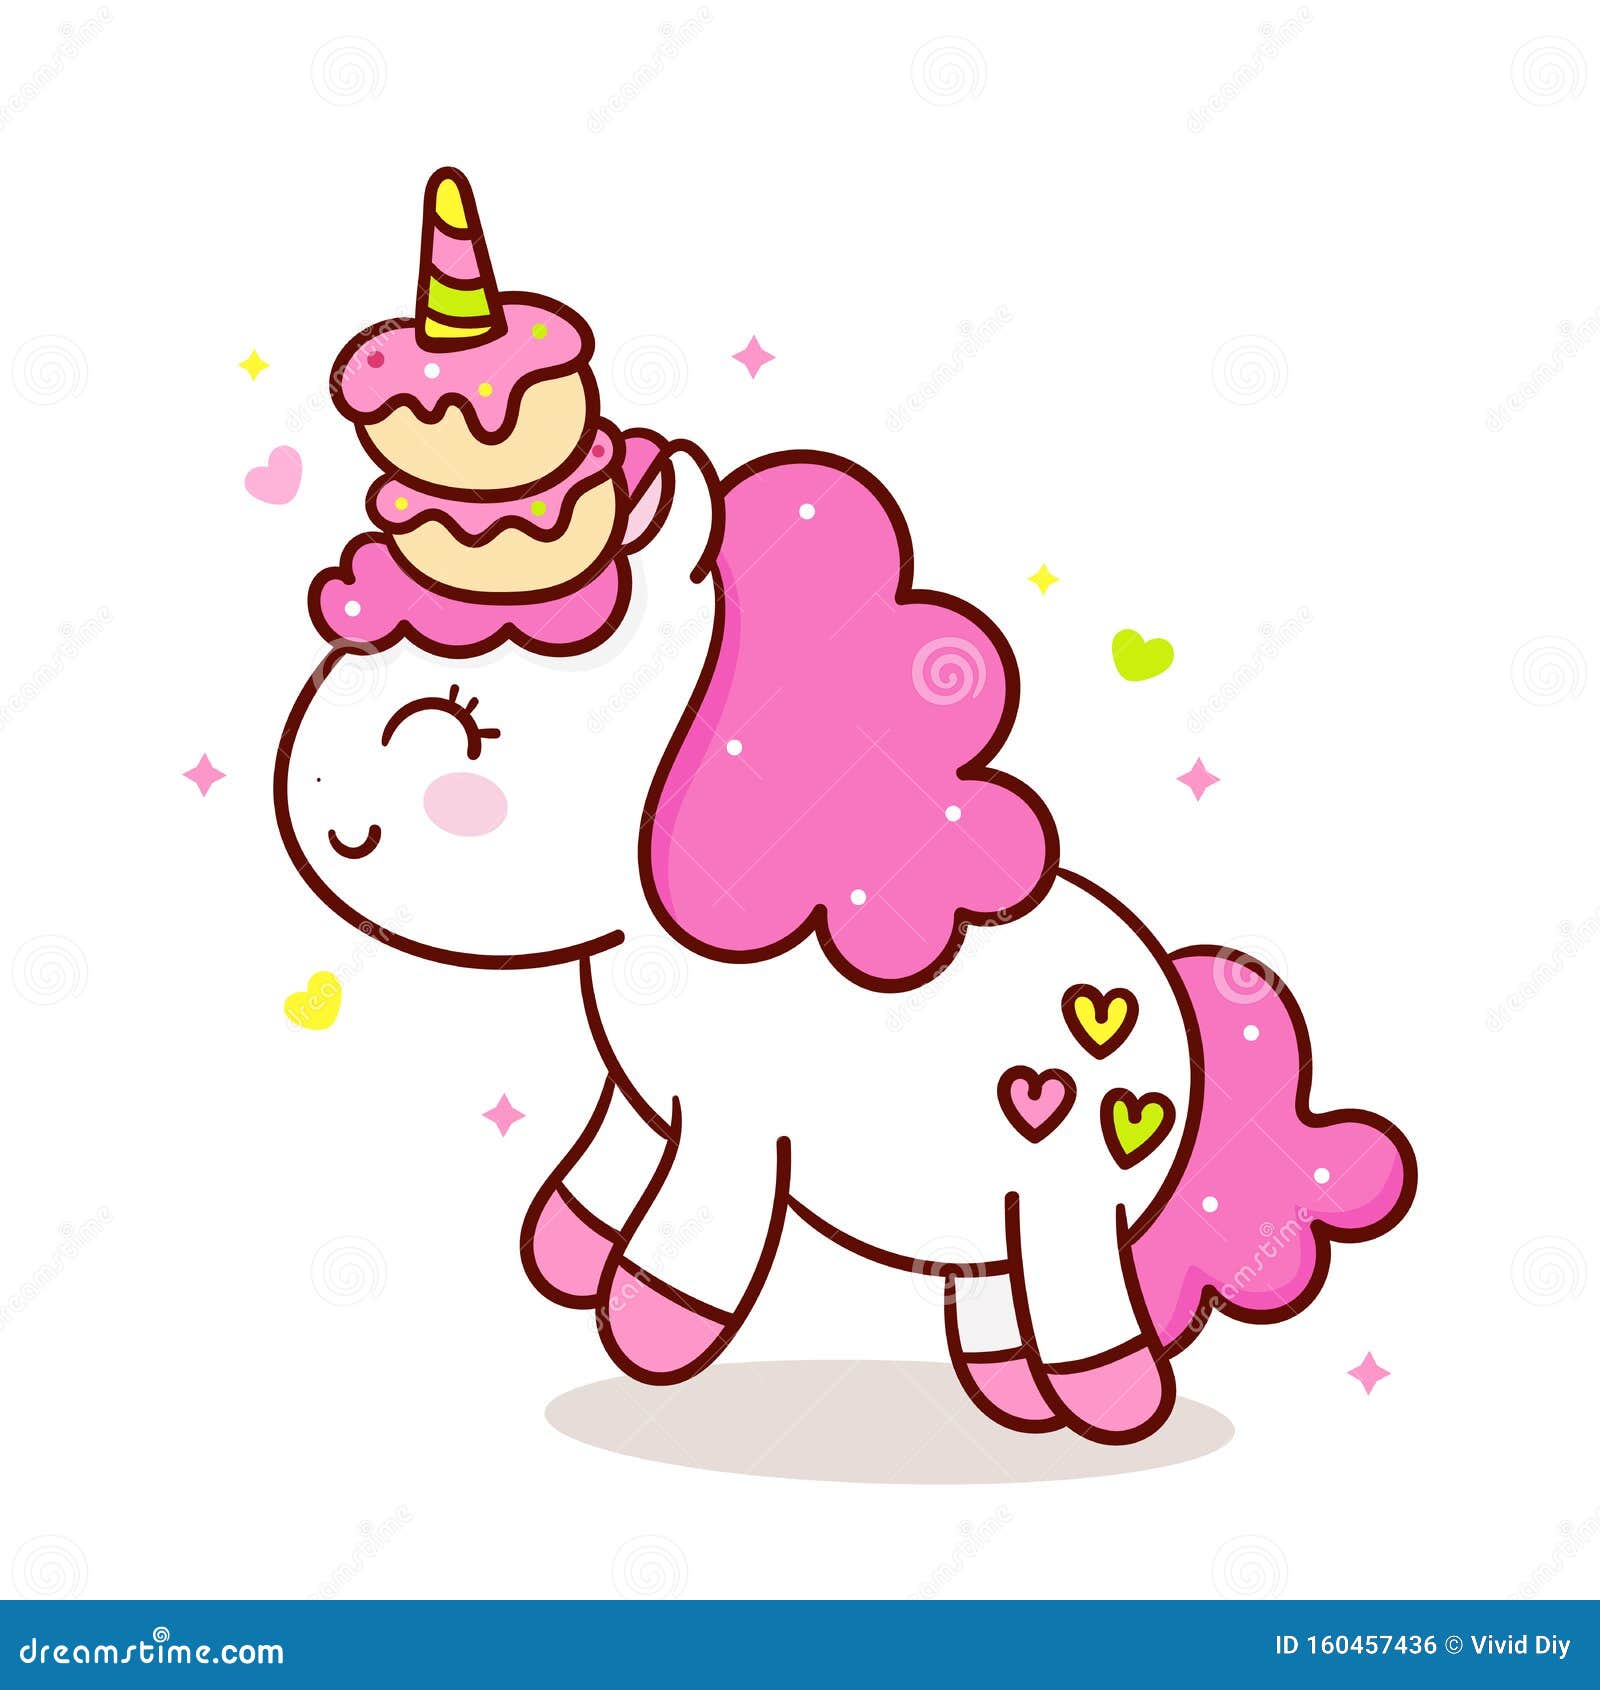 Hình nền Kawaii Unicorn Icecream cực đáng yêu với màu sắc pastel đặc trưng sẽ khiến bạn cảm thấy như được nhâm nhi một chiếc kem ngọt ngào của chính chú thỏ này. Hãy đón xem hình ảnh liên quan để tận hưởng thiên đường ngọt ngào này nào!